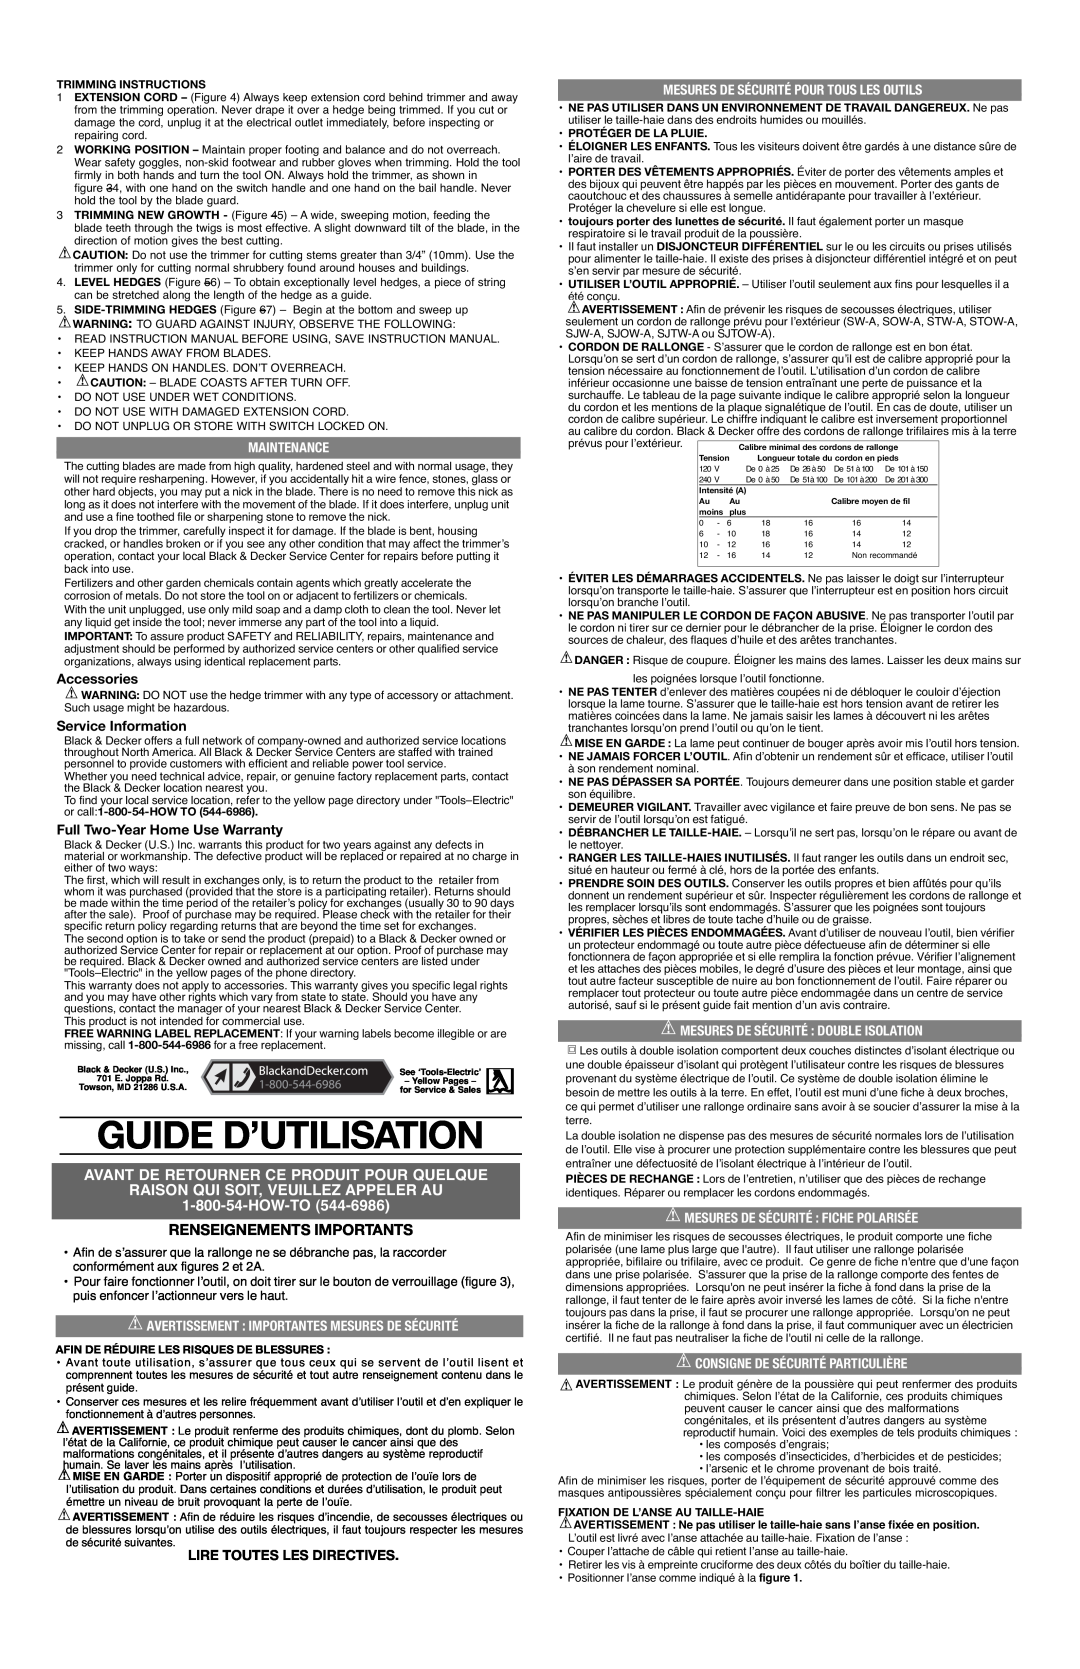 Black & Decker HH2450 Guide D’Utilisation, Avant De Retourner Ce Produit Pour Quelque, Renseignements Importants 